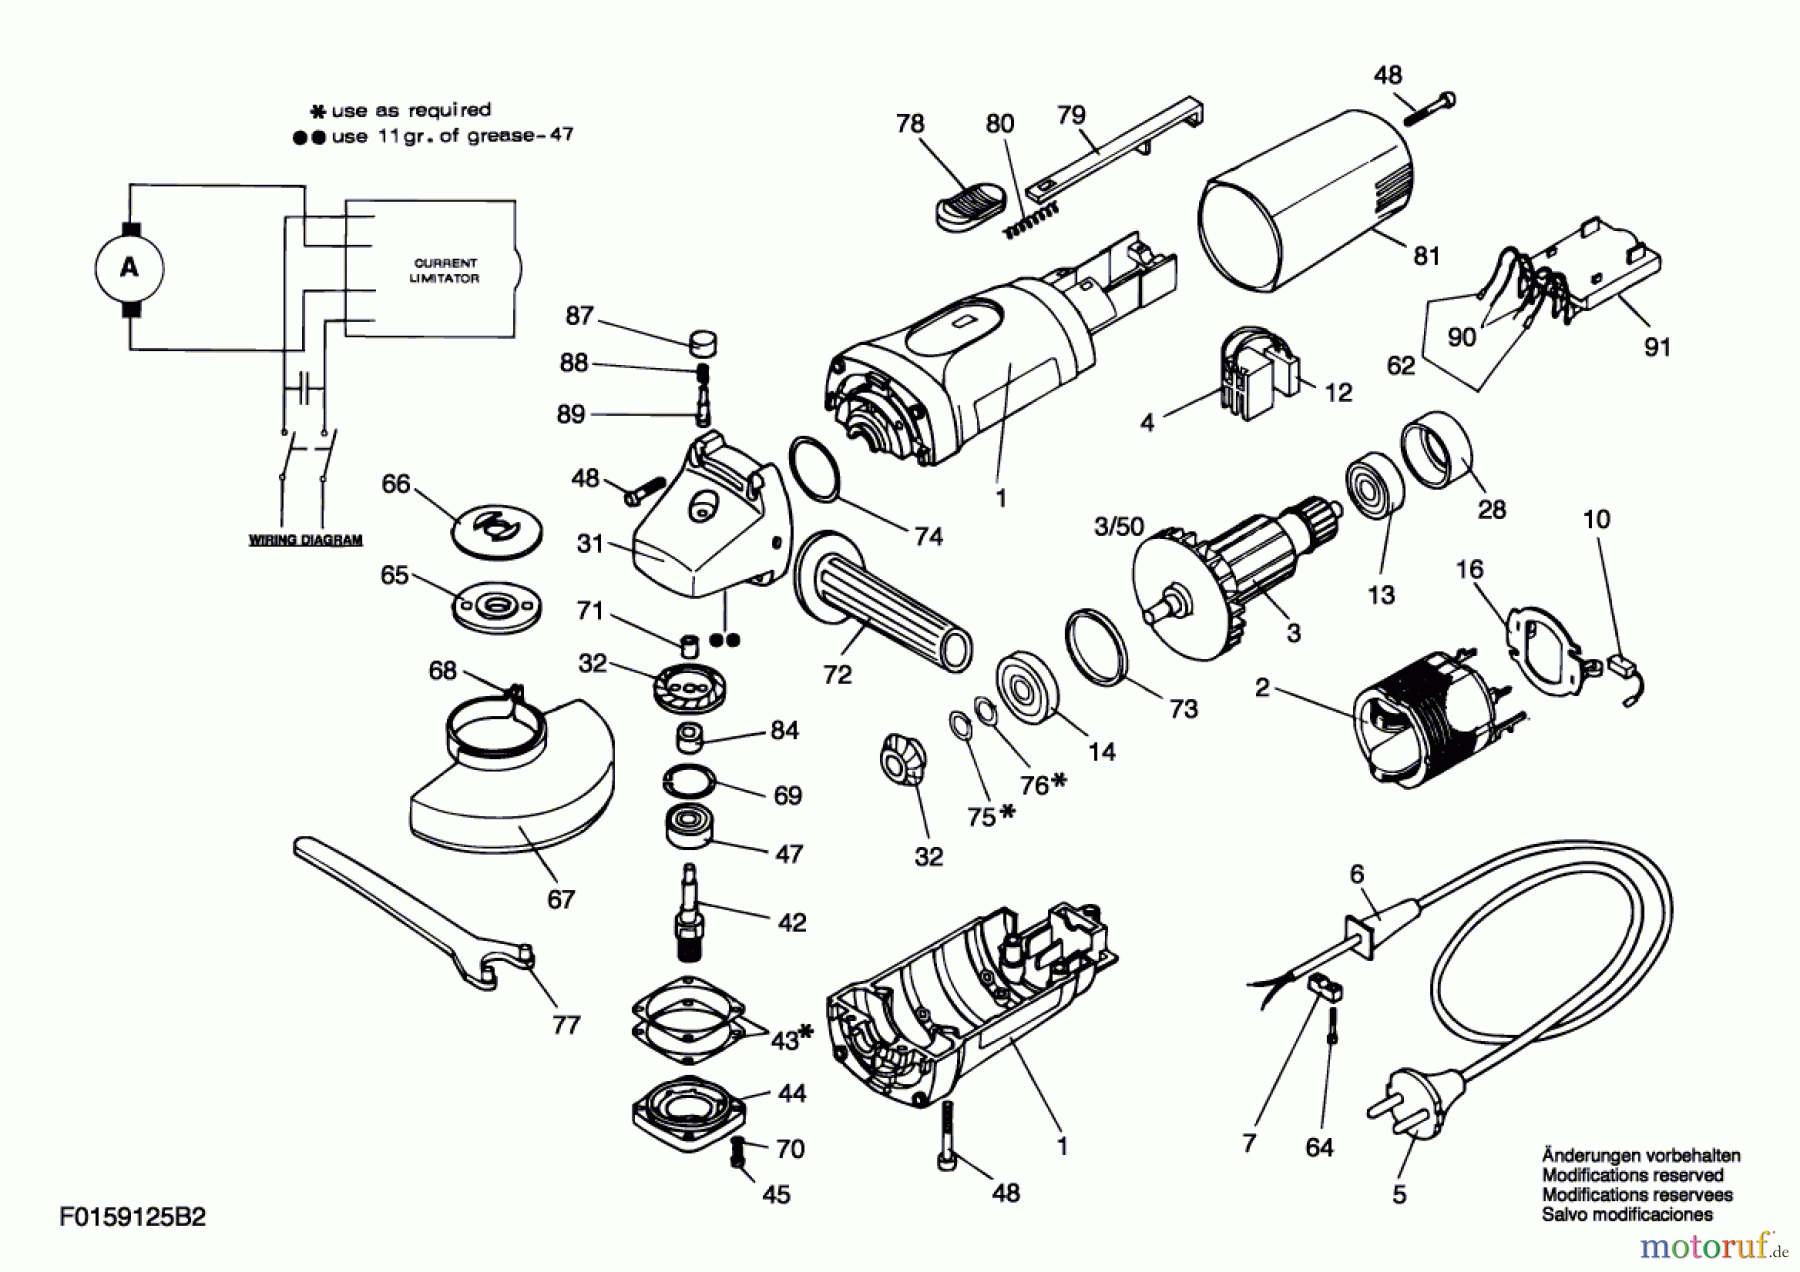  Bosch Werkzeug Winkelschleifer 9125 H2 Seite 1